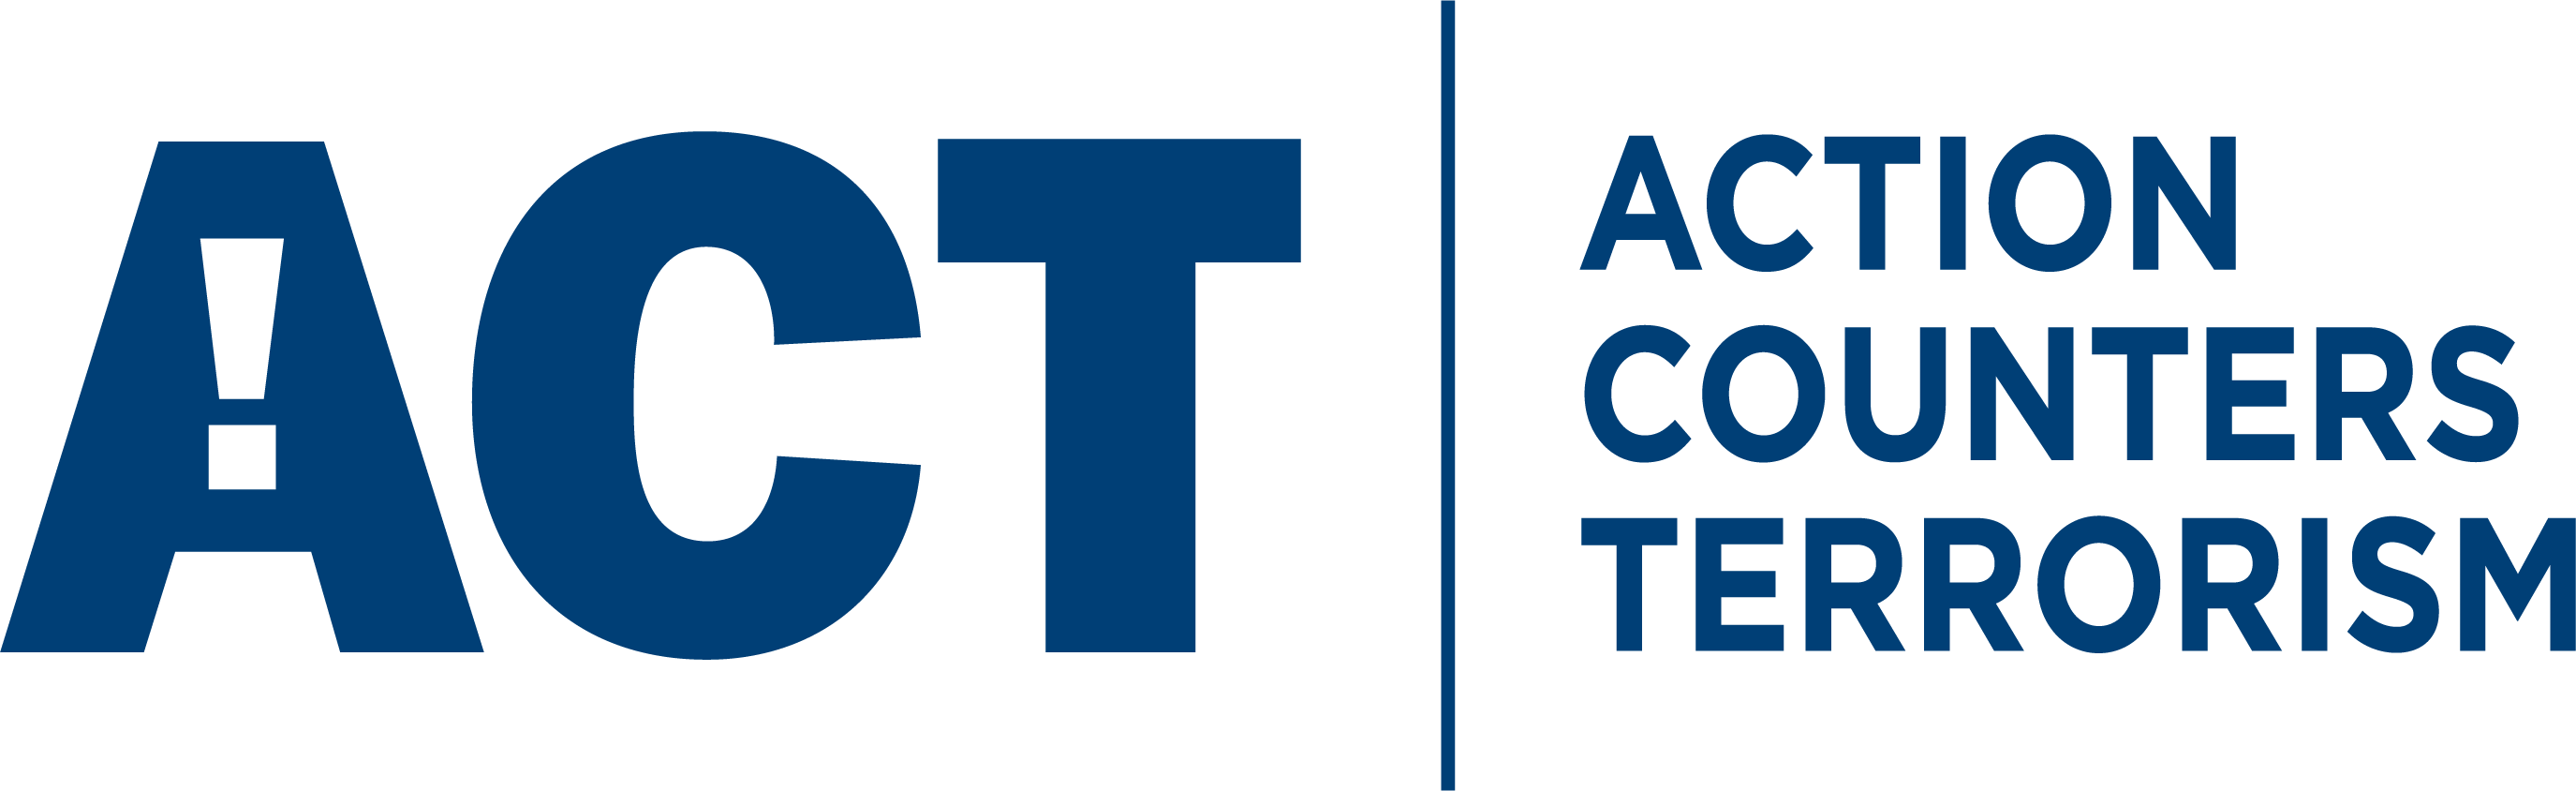 Action Counter Terrorism logo